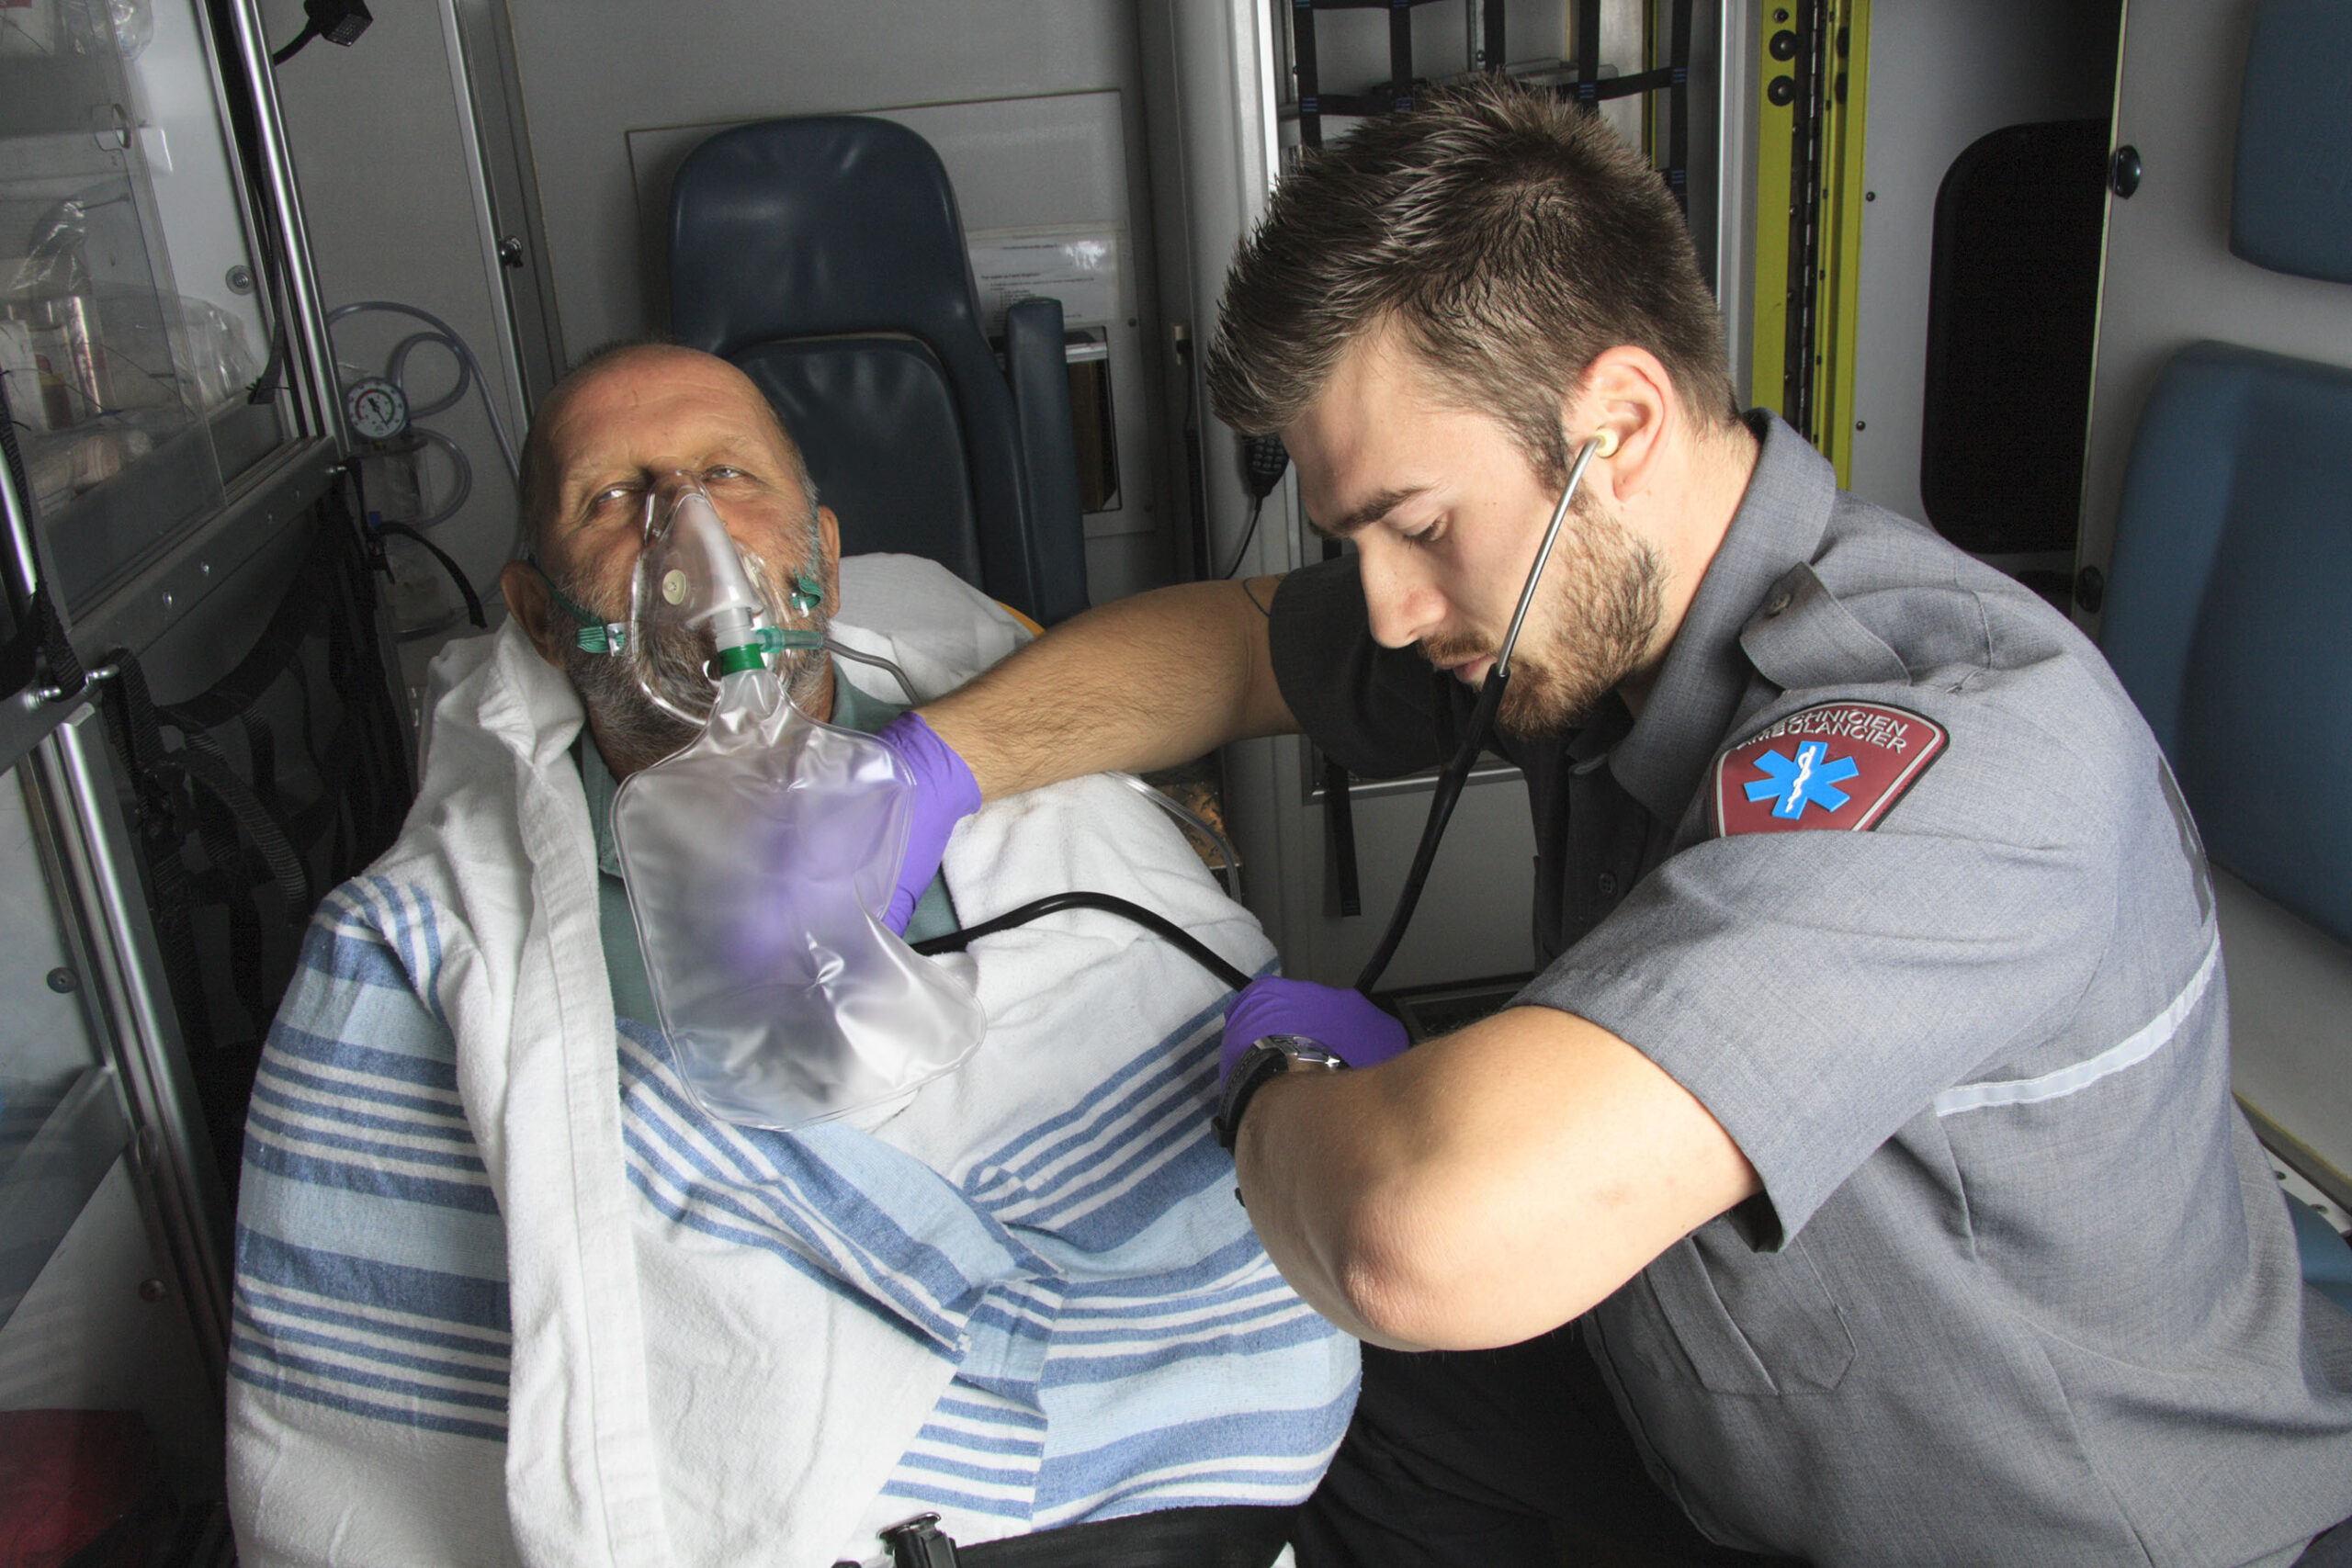 EMT training courses